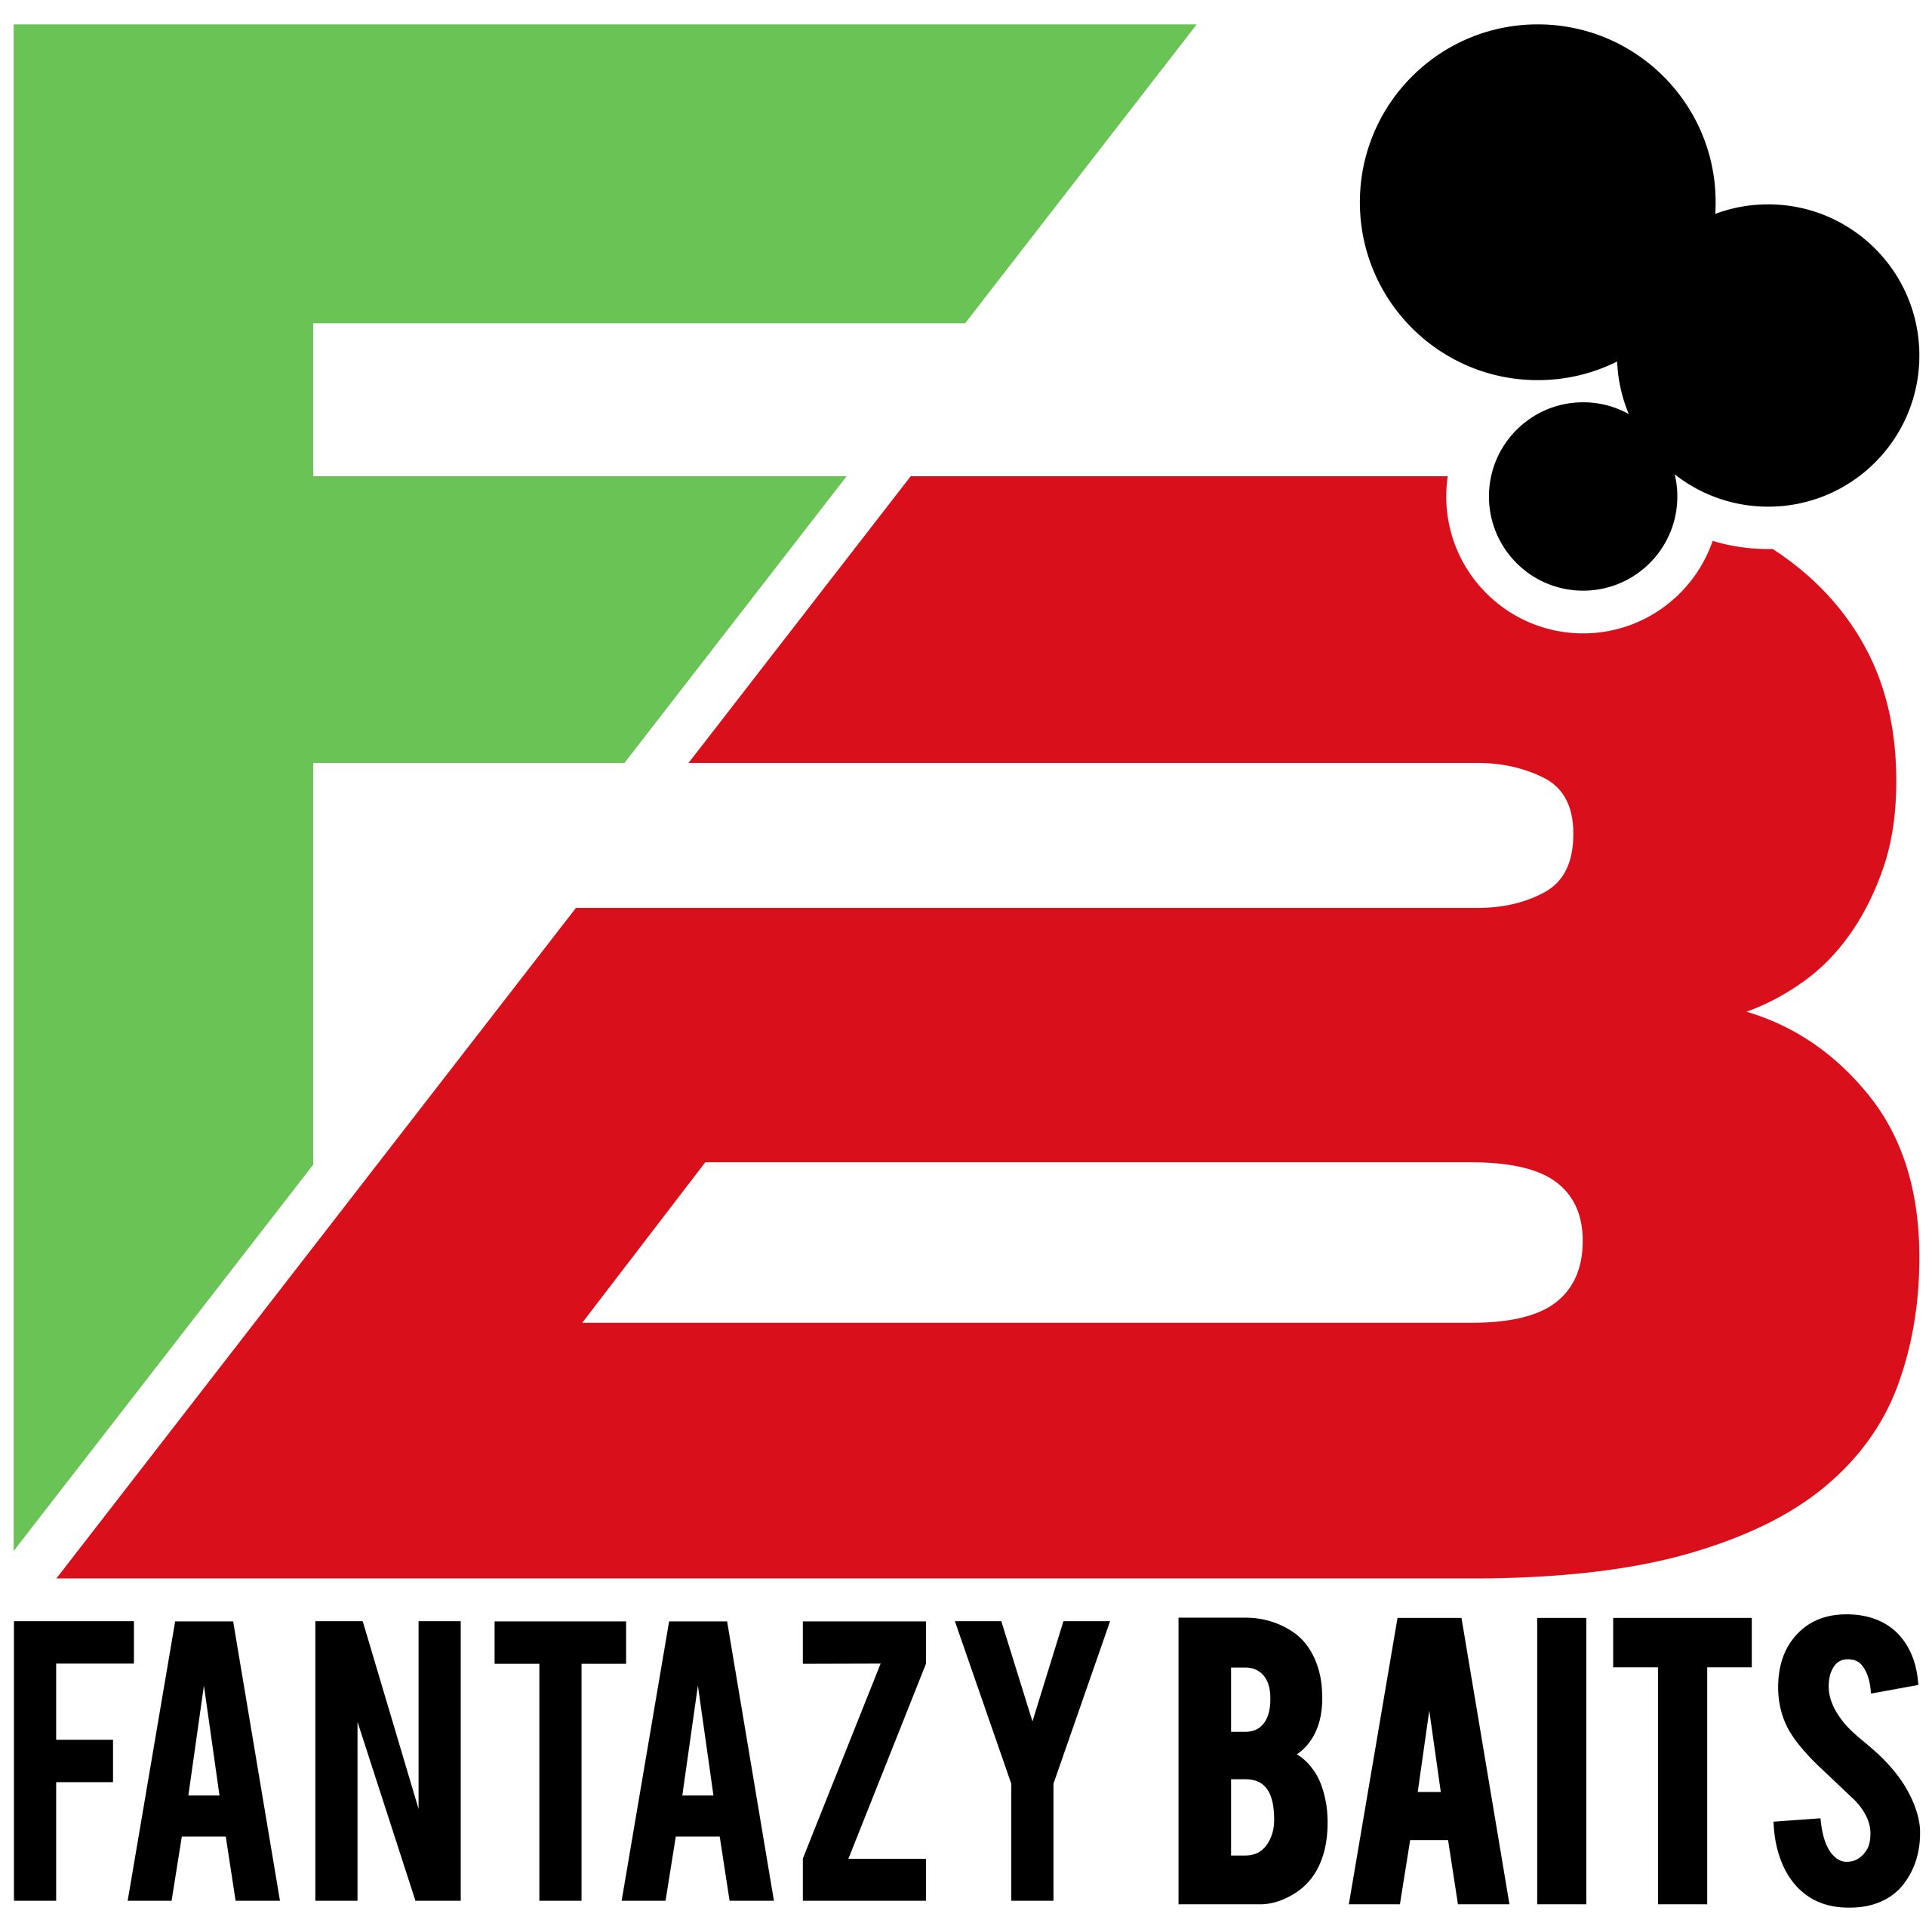 Fantasy baits